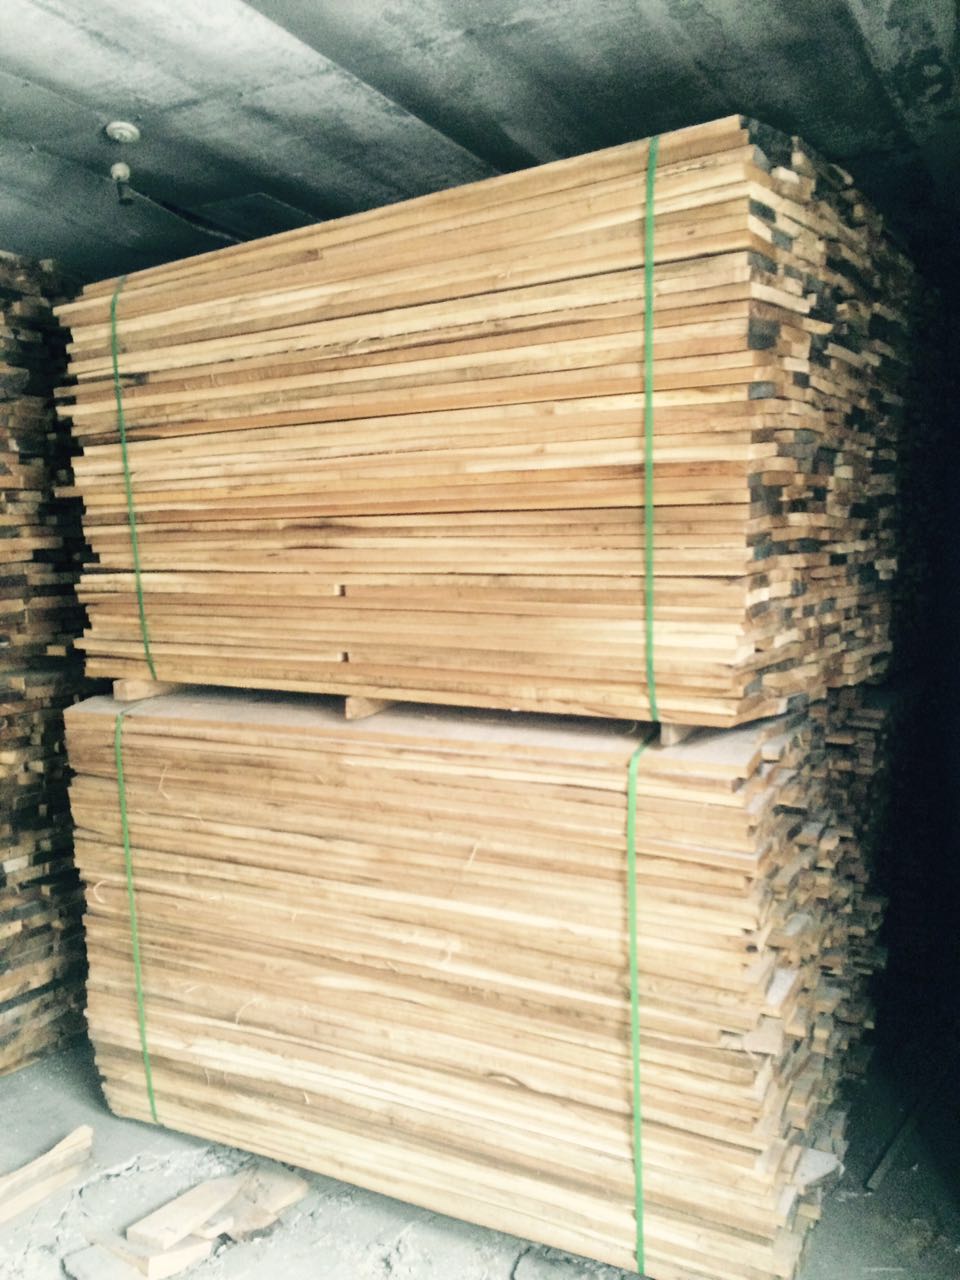 哈尔滨厂家批发水曲柳烘干板材价格 水曲柳集成材精细加工硬杂木材